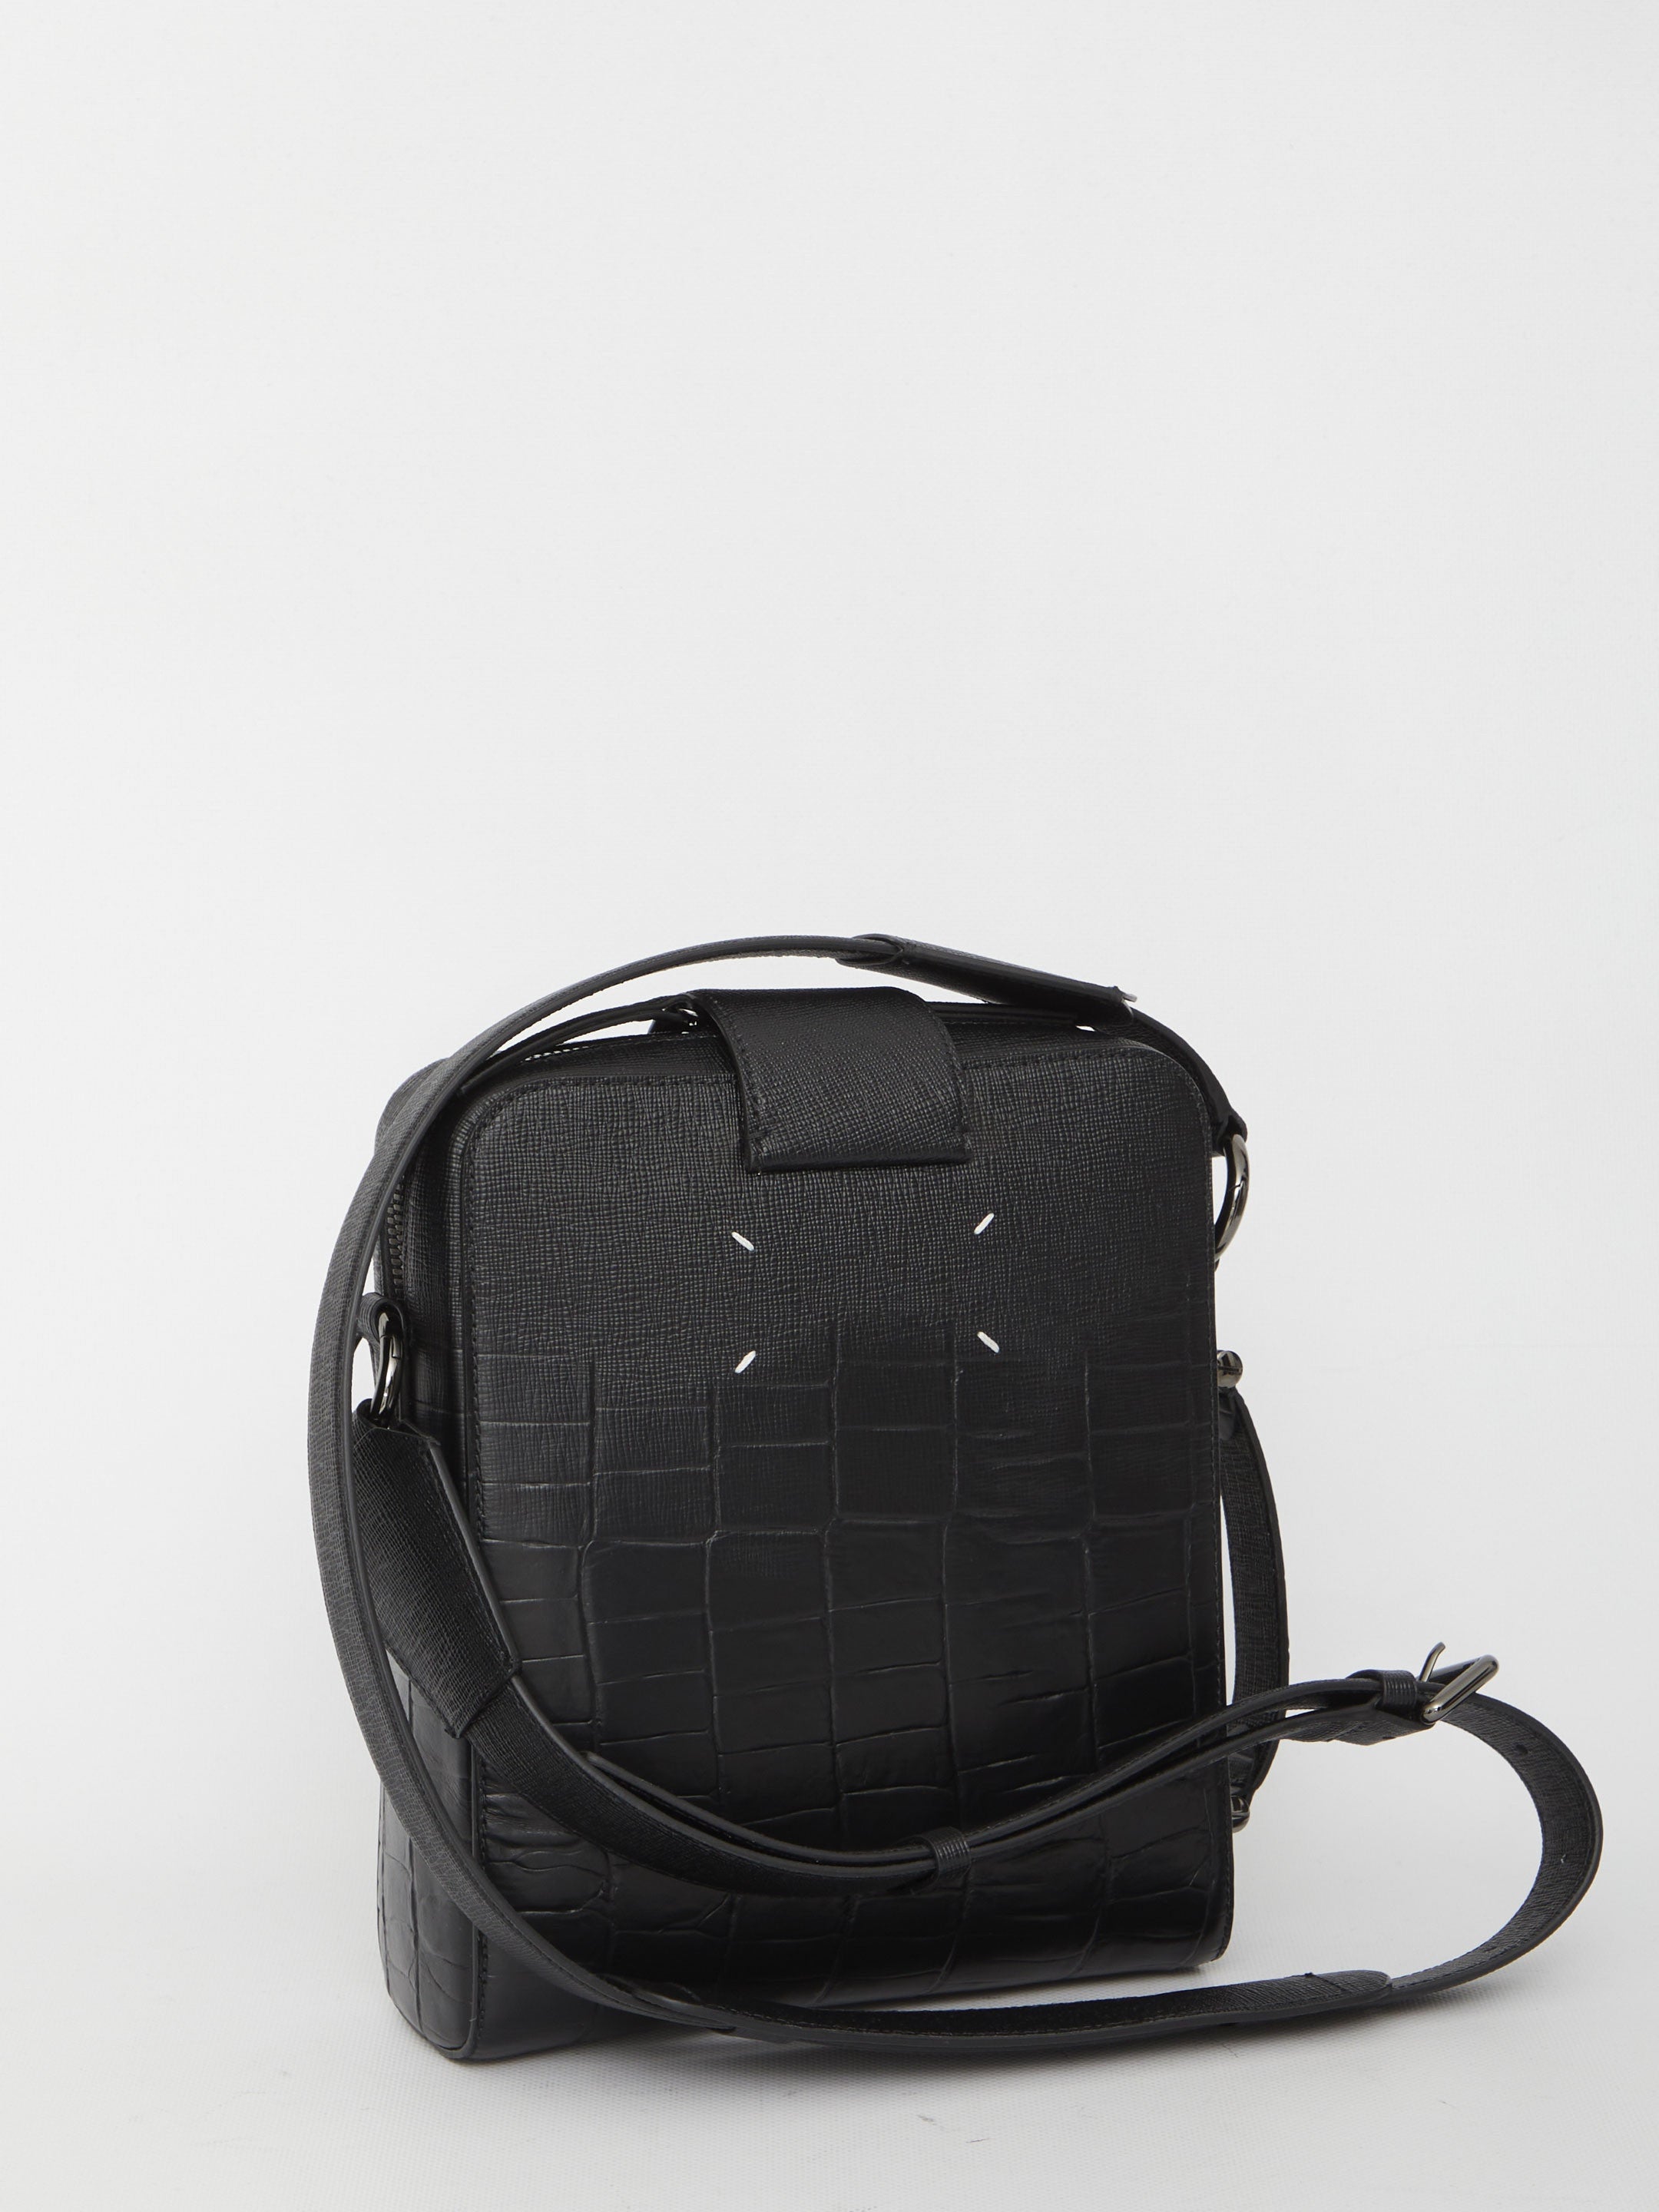 MAISON-MARGIELA-OUTLET-SALE-four-stitch-leather-shoulder-bag-Taschen-QT-BLACK-ARCHIVE-COLLECTION-2.jpg